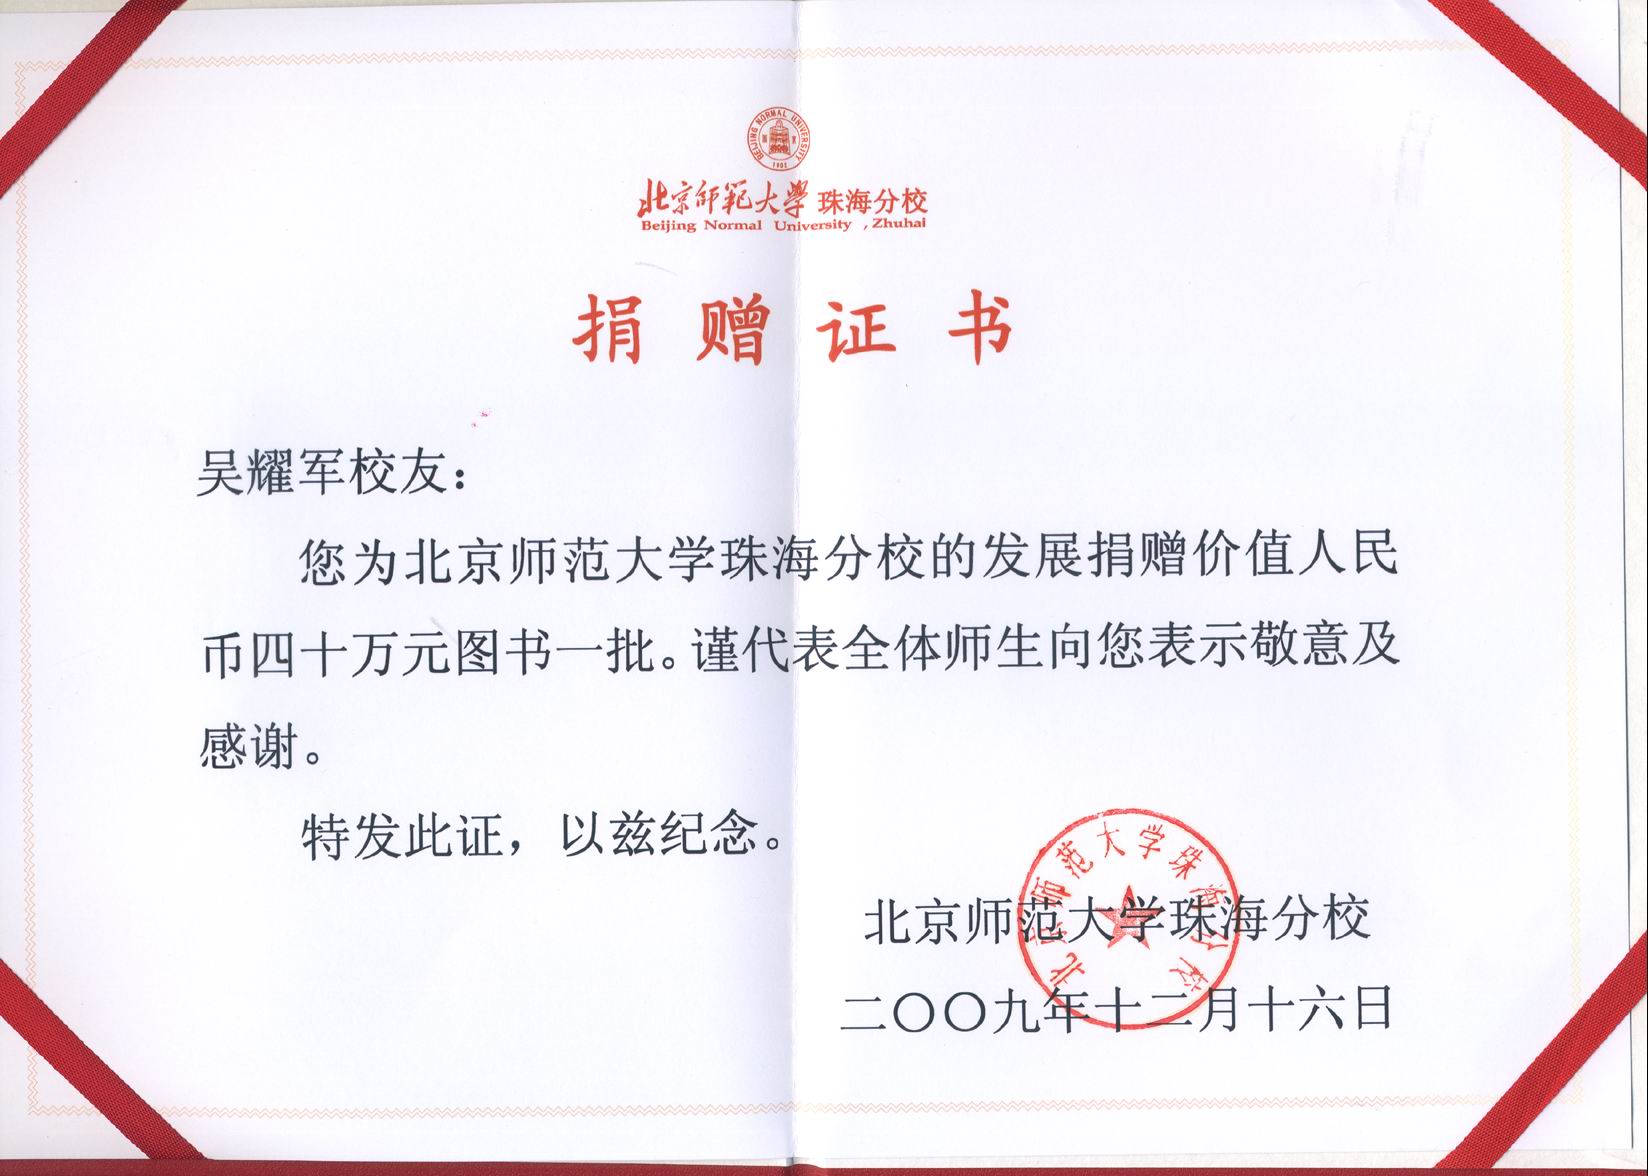 北京師大珠海分校為吳耀軍校友頒發榮譽證書